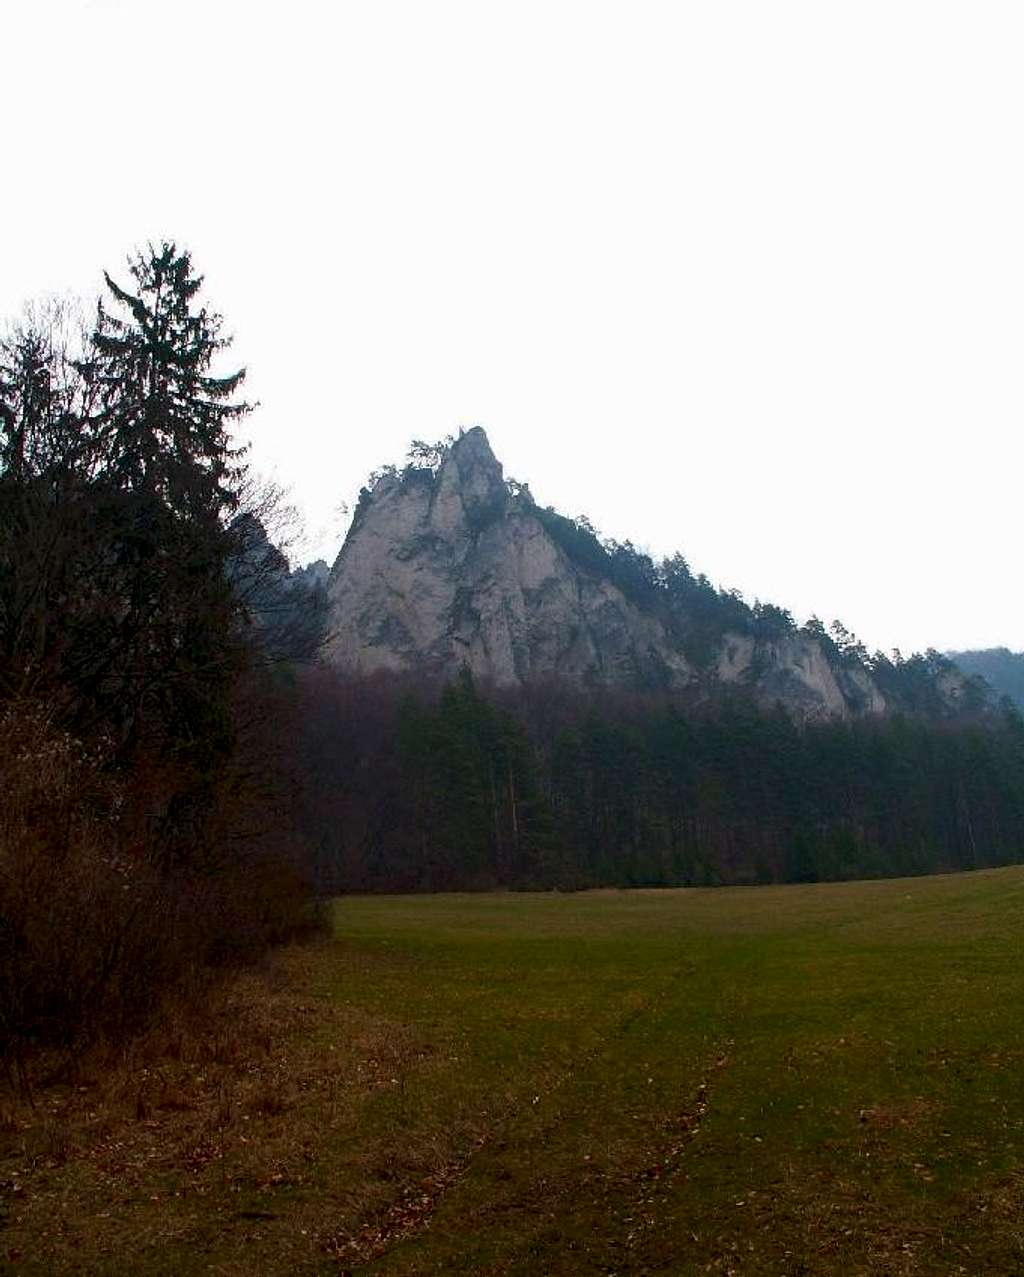 Súľovské skaly from Lúka pod Roháčom